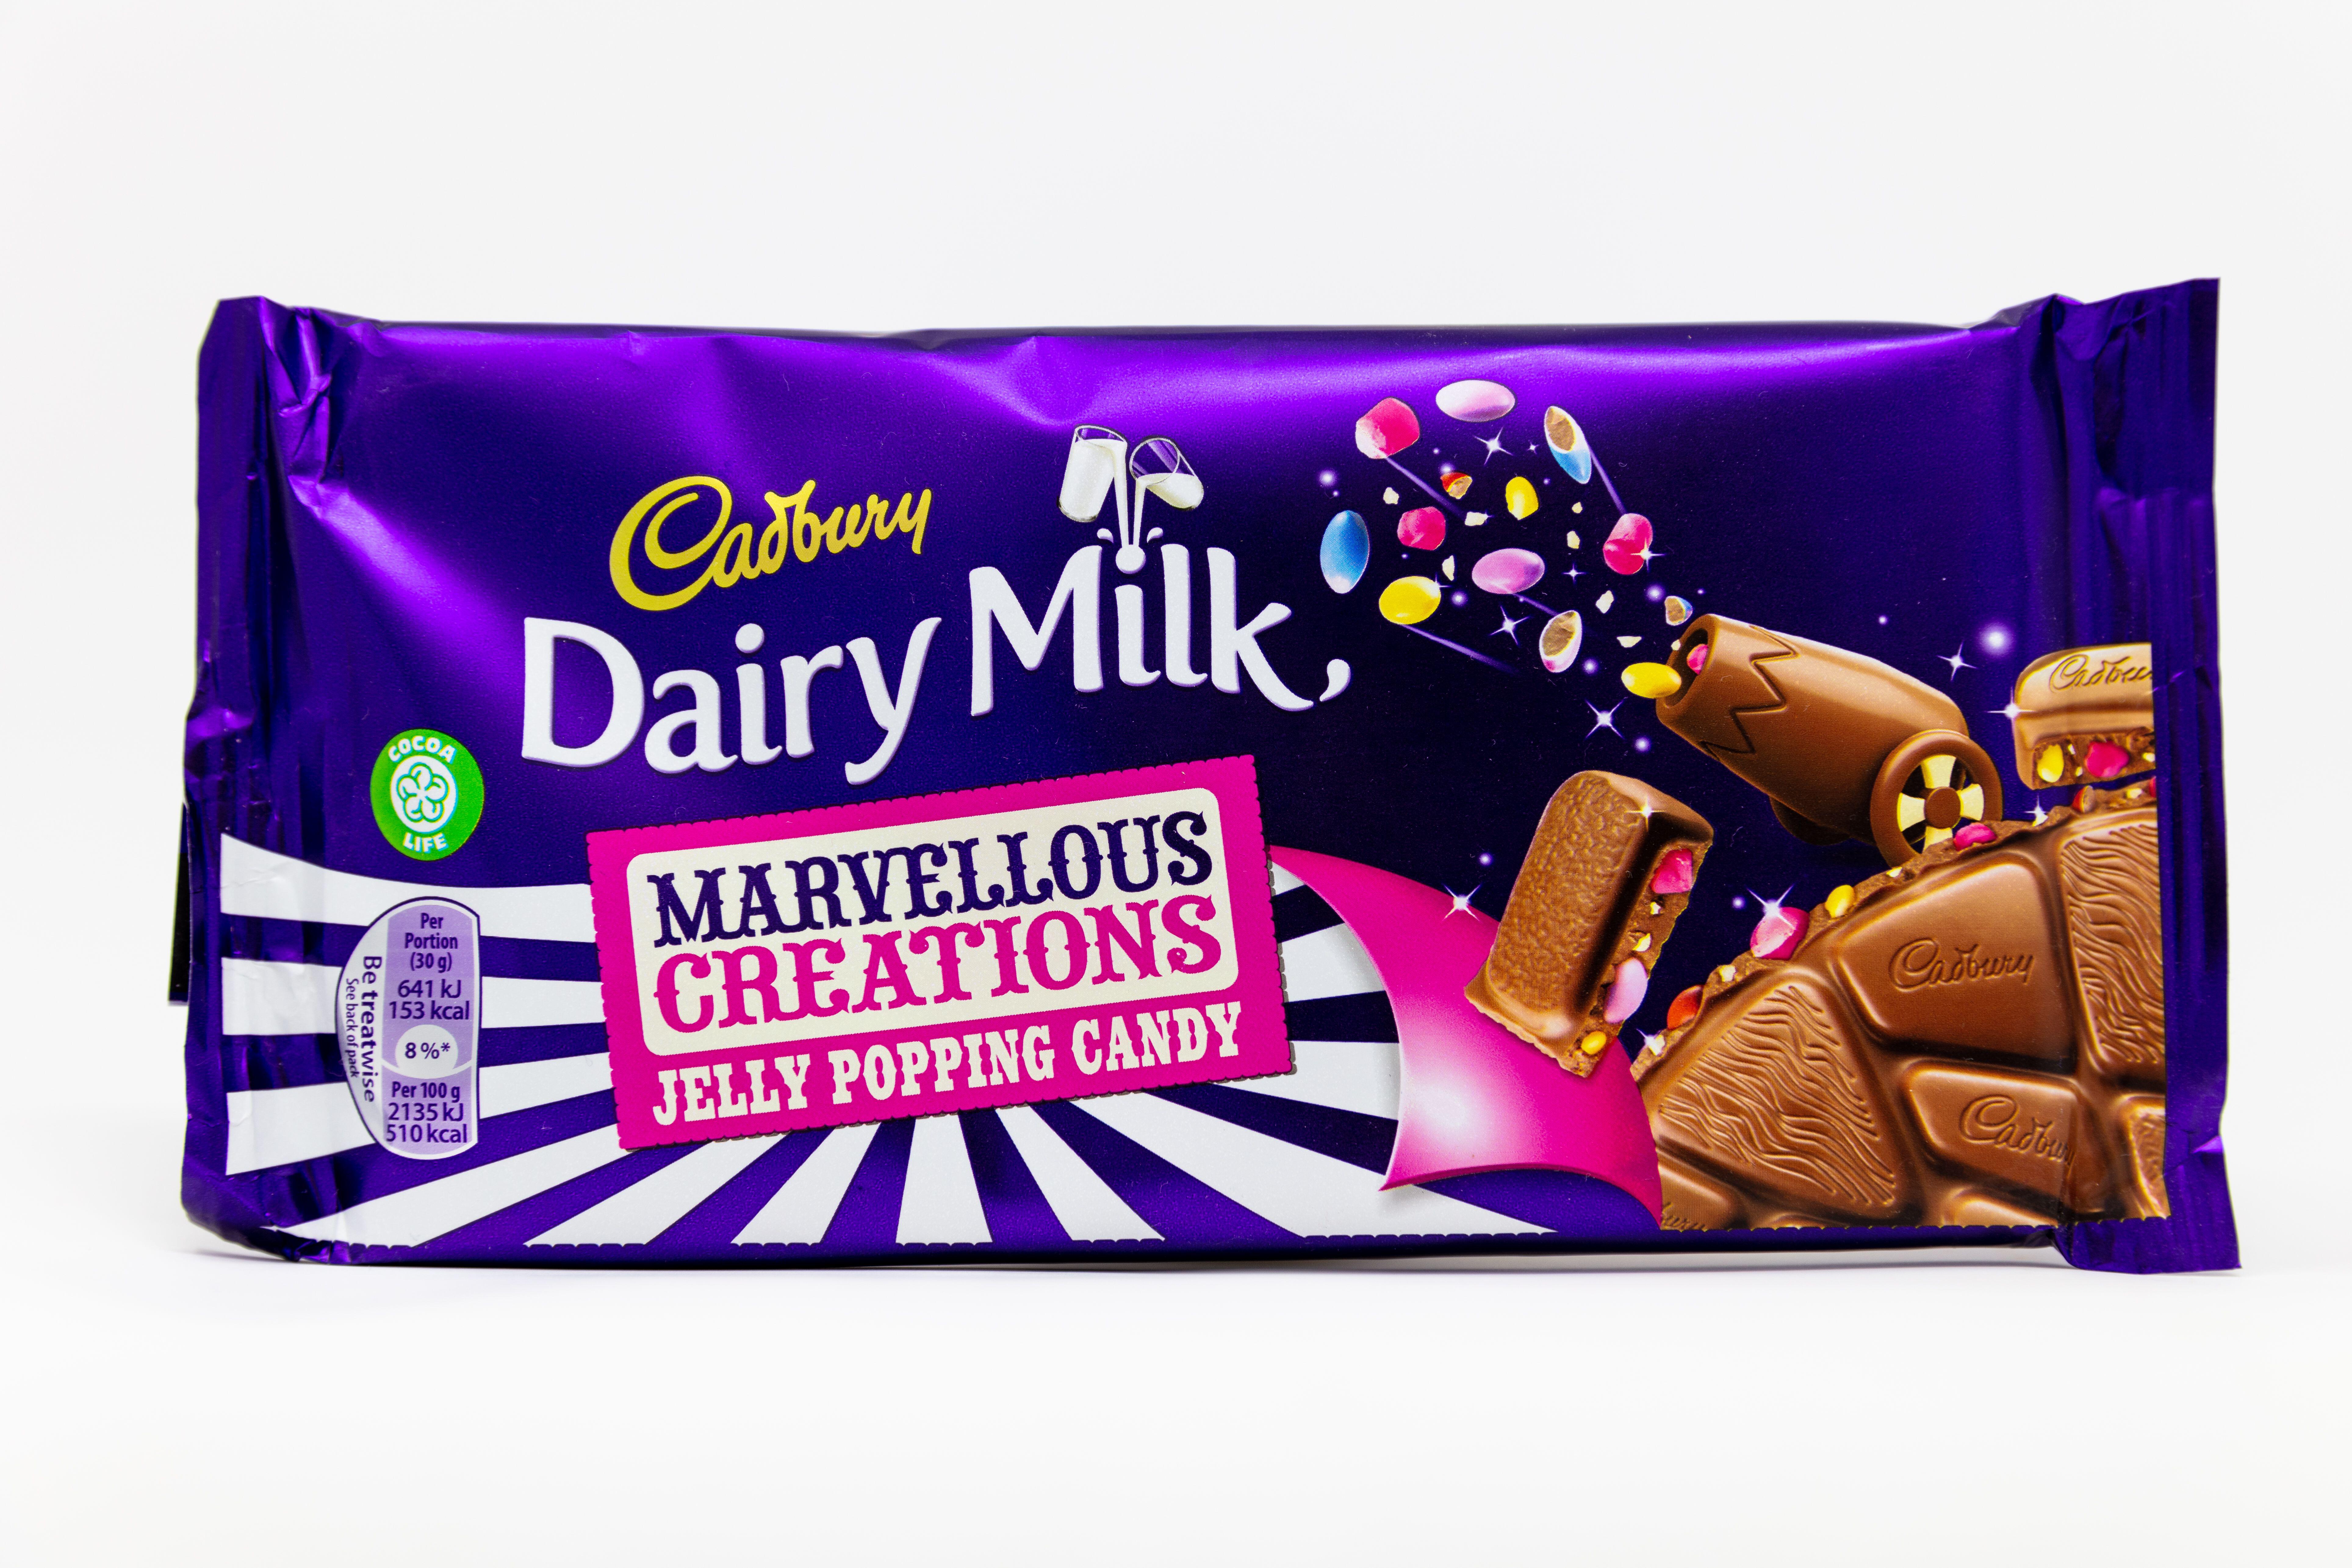 Die neue Schokolade scheint den Kreationen von Dairy Milk Marvelous nachempfunden zu sein